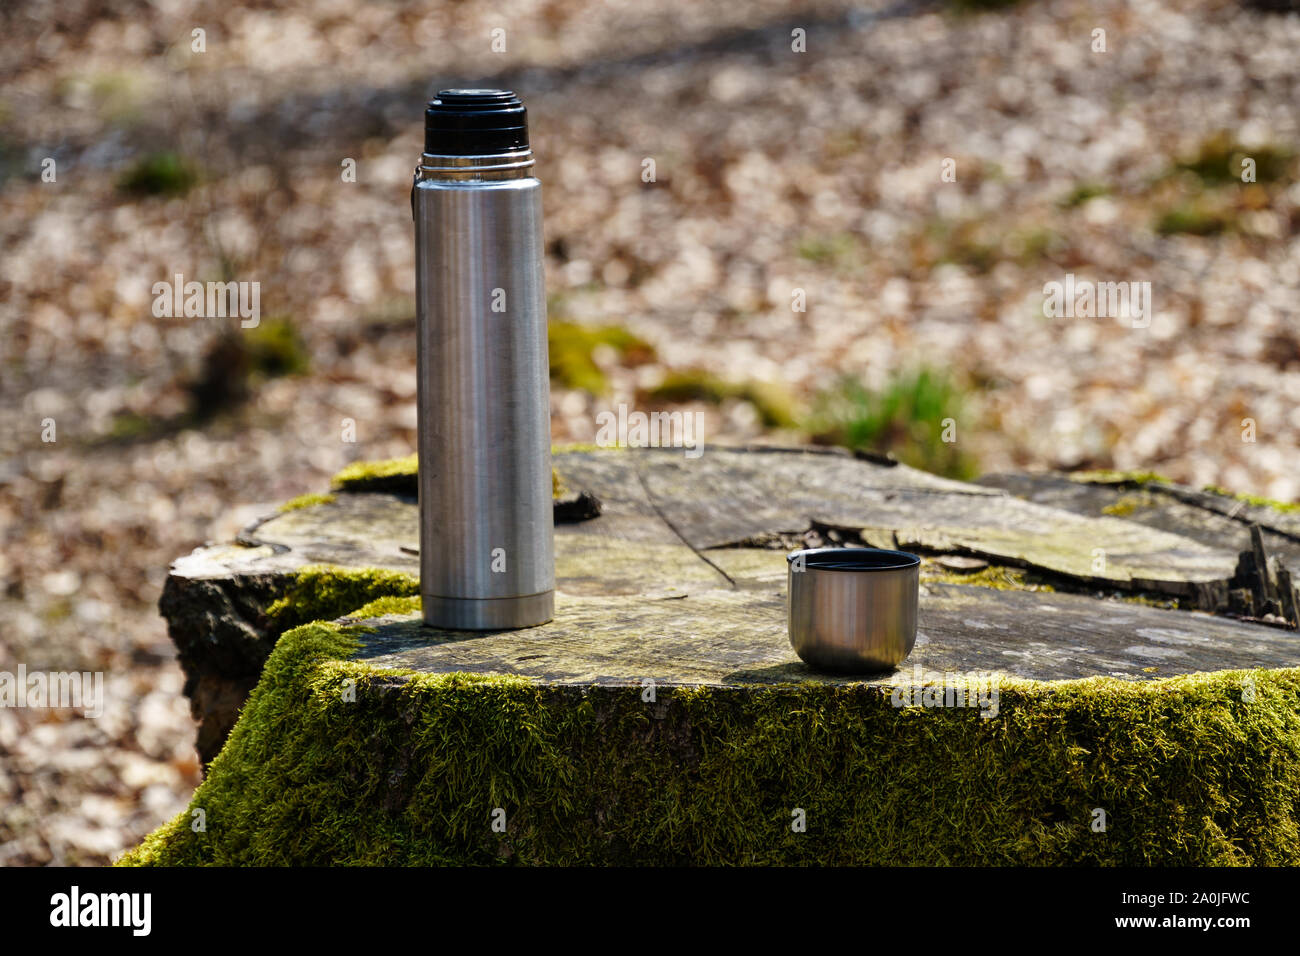 Thermosflasche und eine Tasse Kaffee oder Tee auf einem Moos bedeckt  Baumstumpf im Sonnenlicht in den Wäldern (Winkelansicht, Querformat  Stockfotografie - Alamy